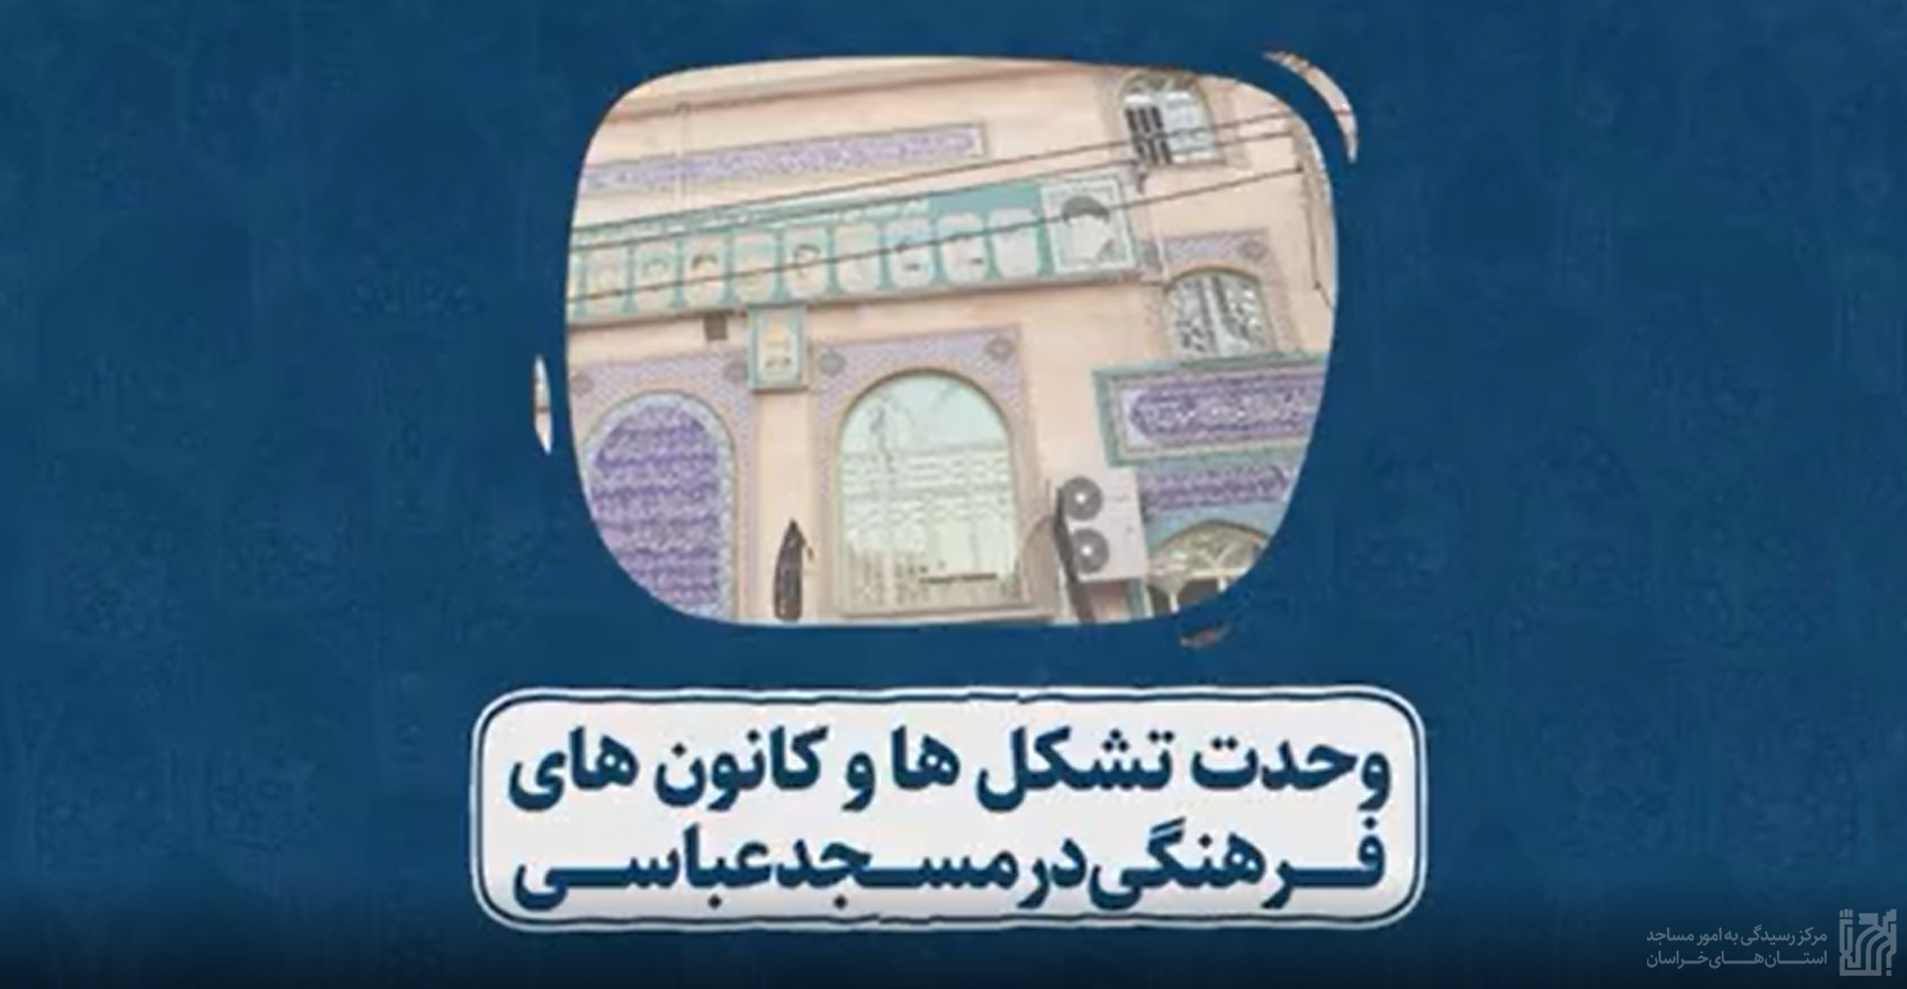 مسجدشناخت- مسجدعباسی مشهد.jpg